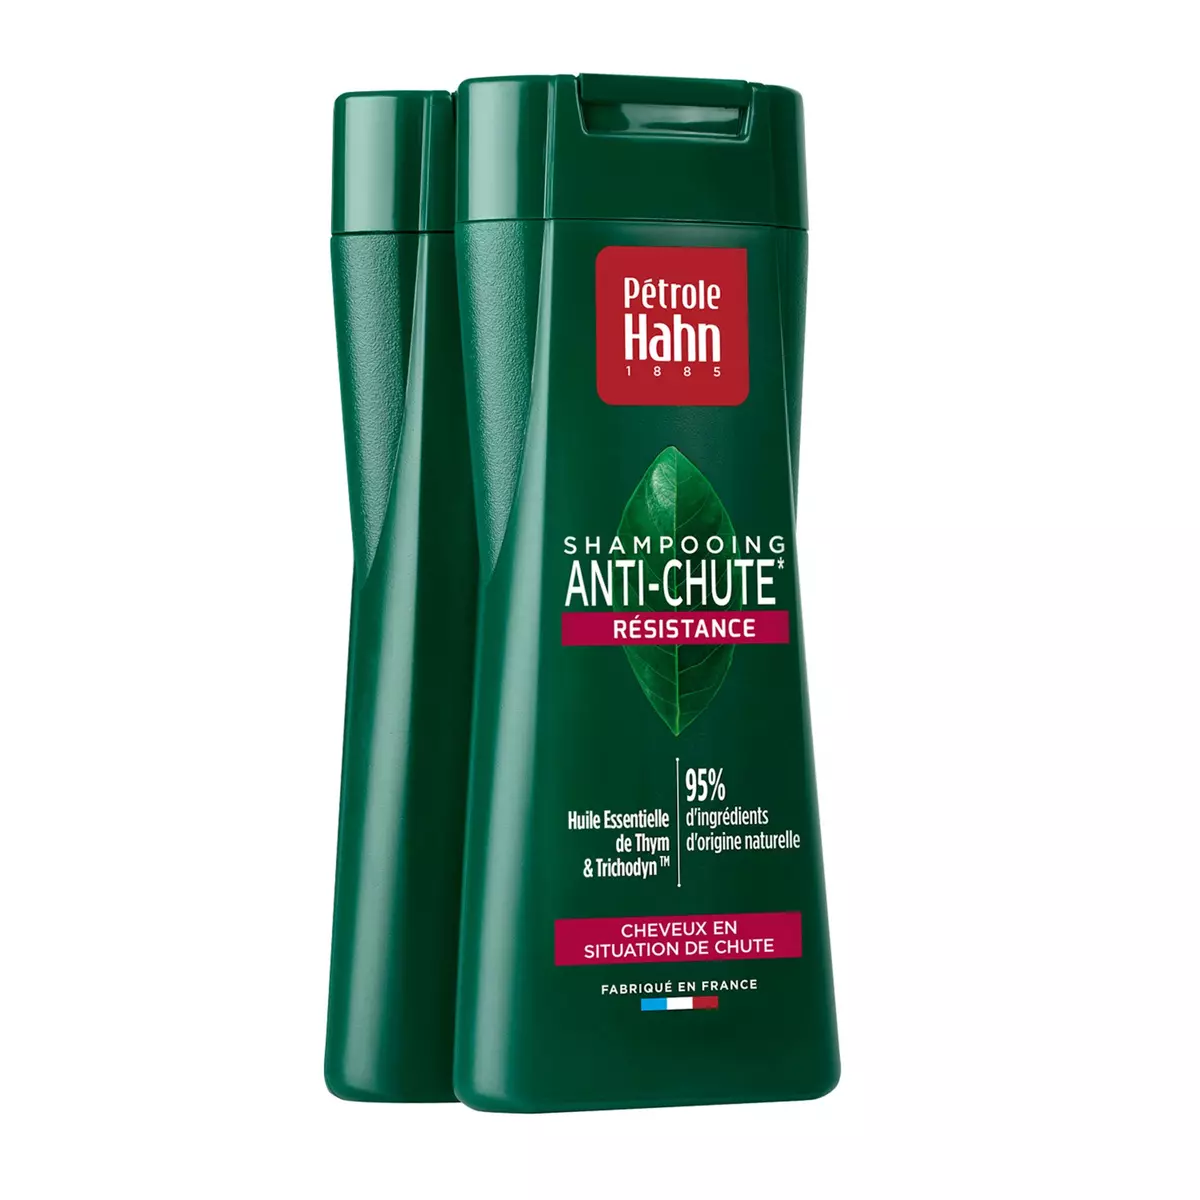 PETROLE HAHN Shampooing anti-chute résistance 2x250ml